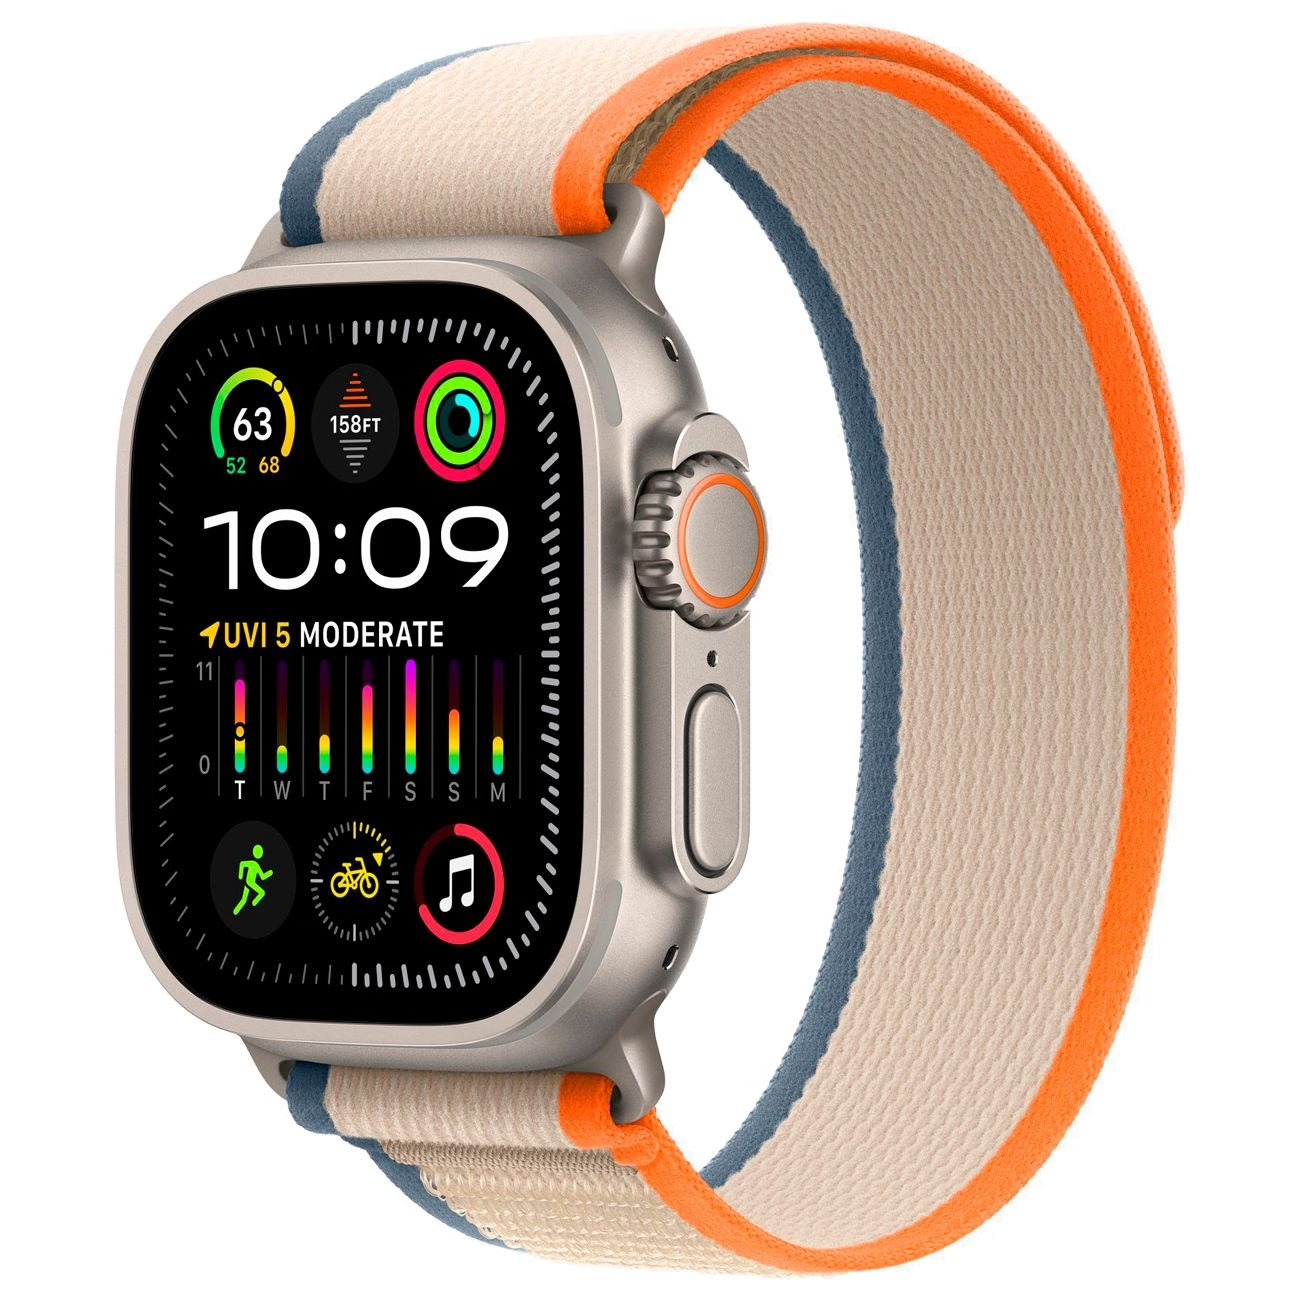 Купить смарт-часы apple watch ultra 2 trail loop orange/beige Apple Watch Ultra 2 в официальном магазине Apple, Samsung, Xiaomi. iPixel.ru Купить, заказ, кредит, рассрочка, отзывы,  характеристики, цена,  фотографии, в подарок.